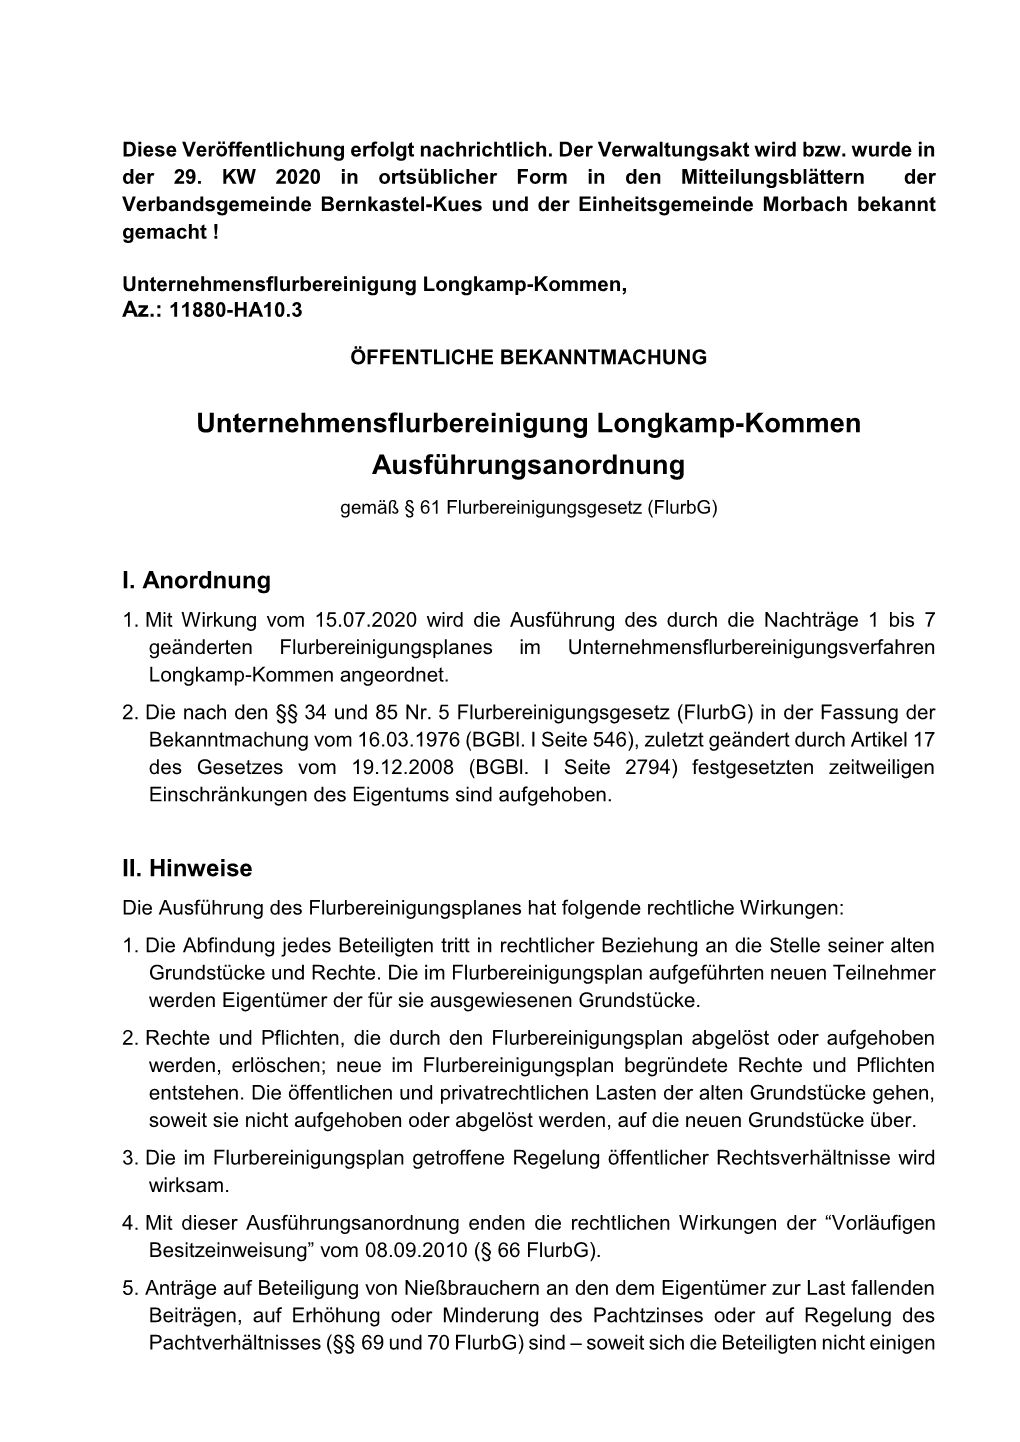 Unternehmensflurbereinigung Longkamp-Kommen Ausführungsanordnung